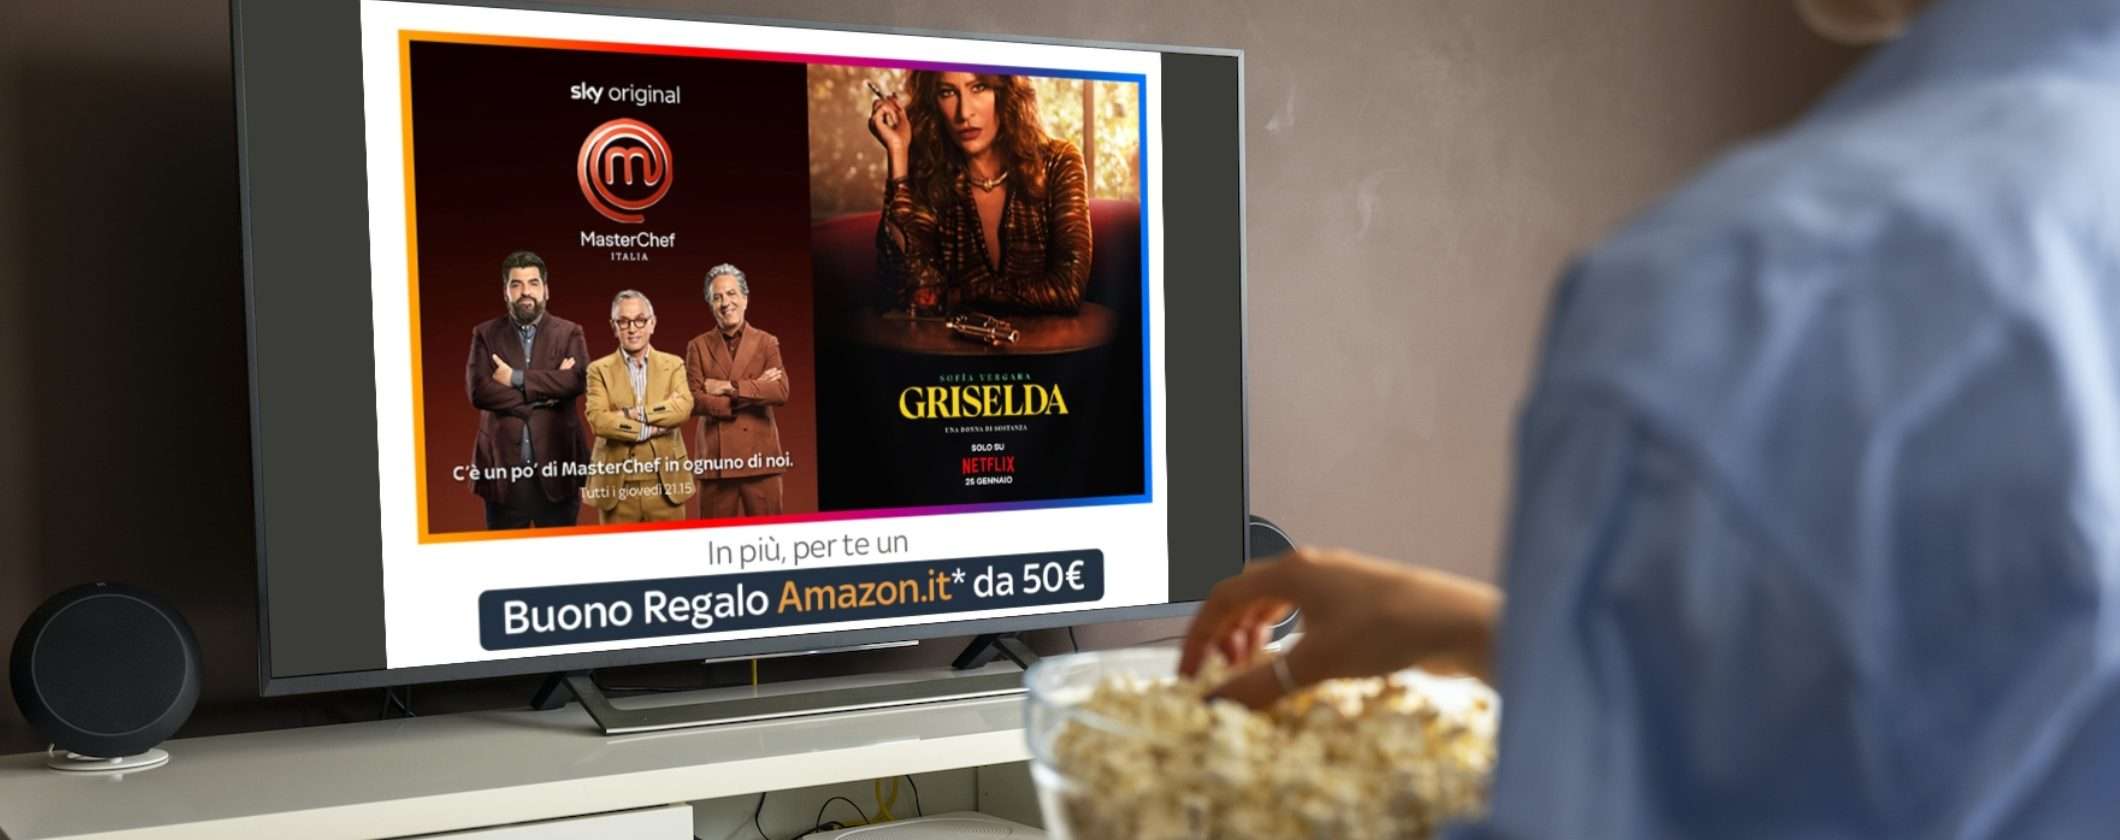 Sky TV + Netflix: solo 19€ mese e Buono Amazon 50€ in REGALO